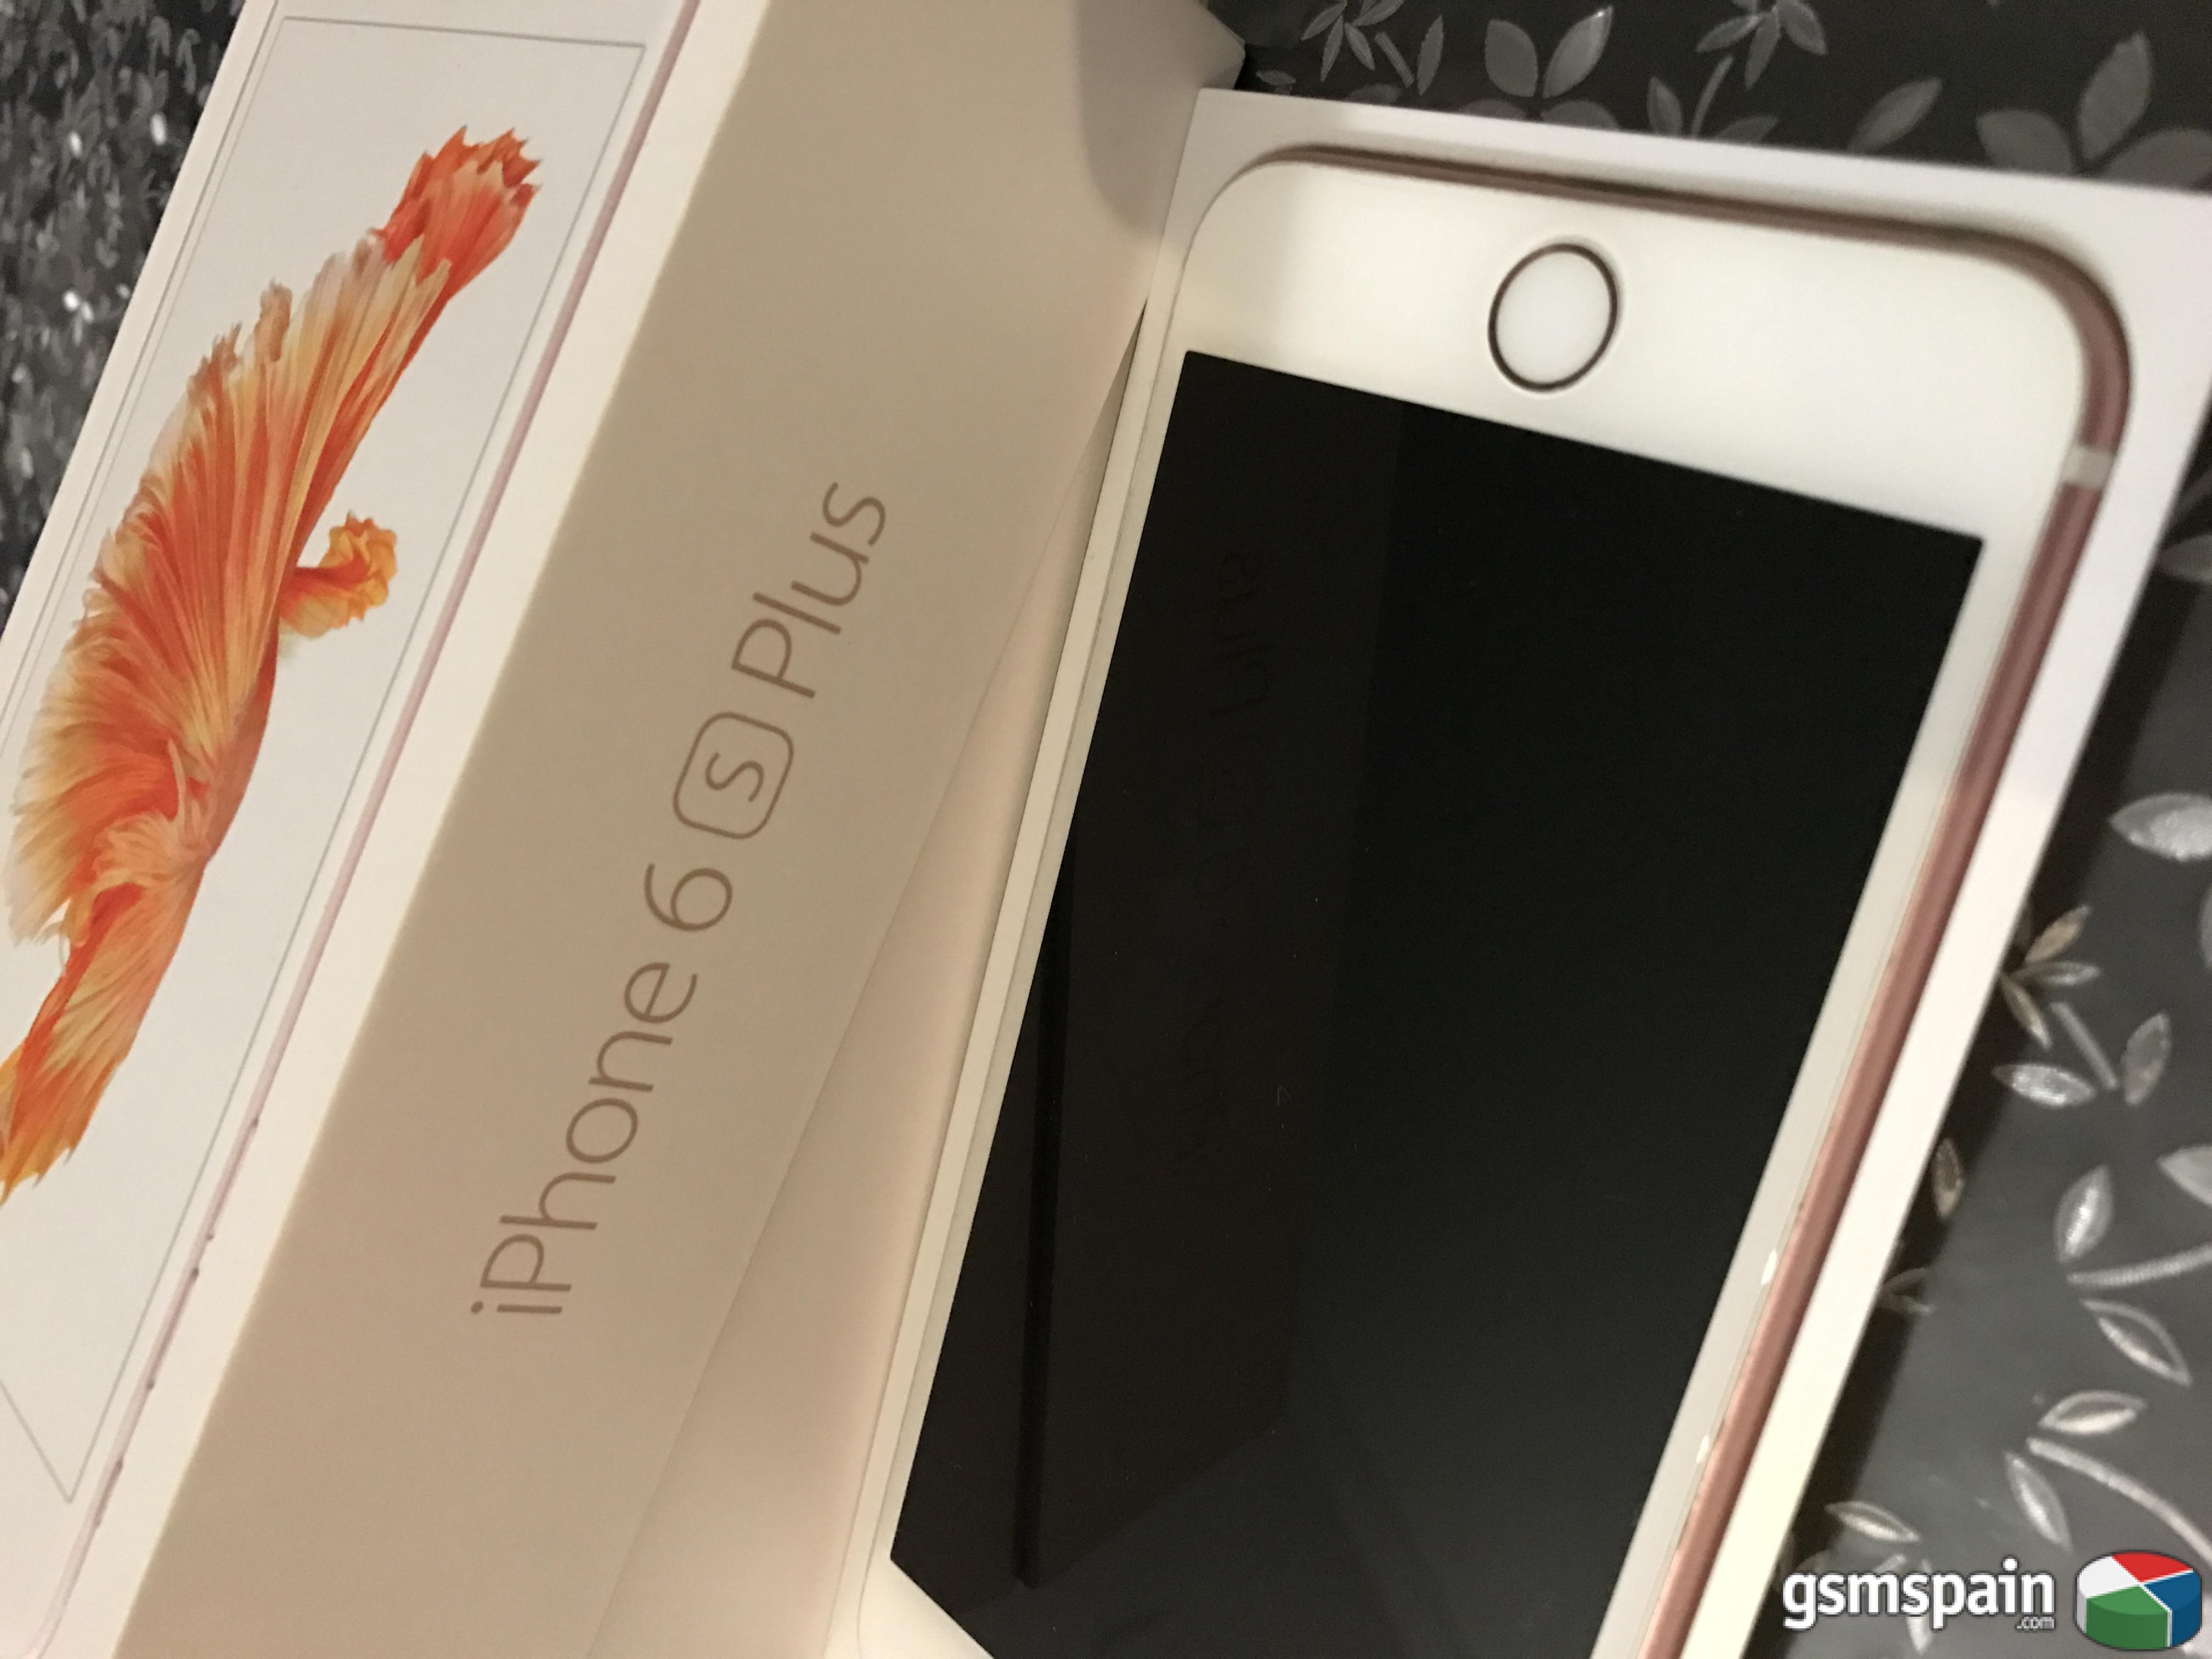 [VENDO] Iphone 6s plus 64 gb rosa rose gold